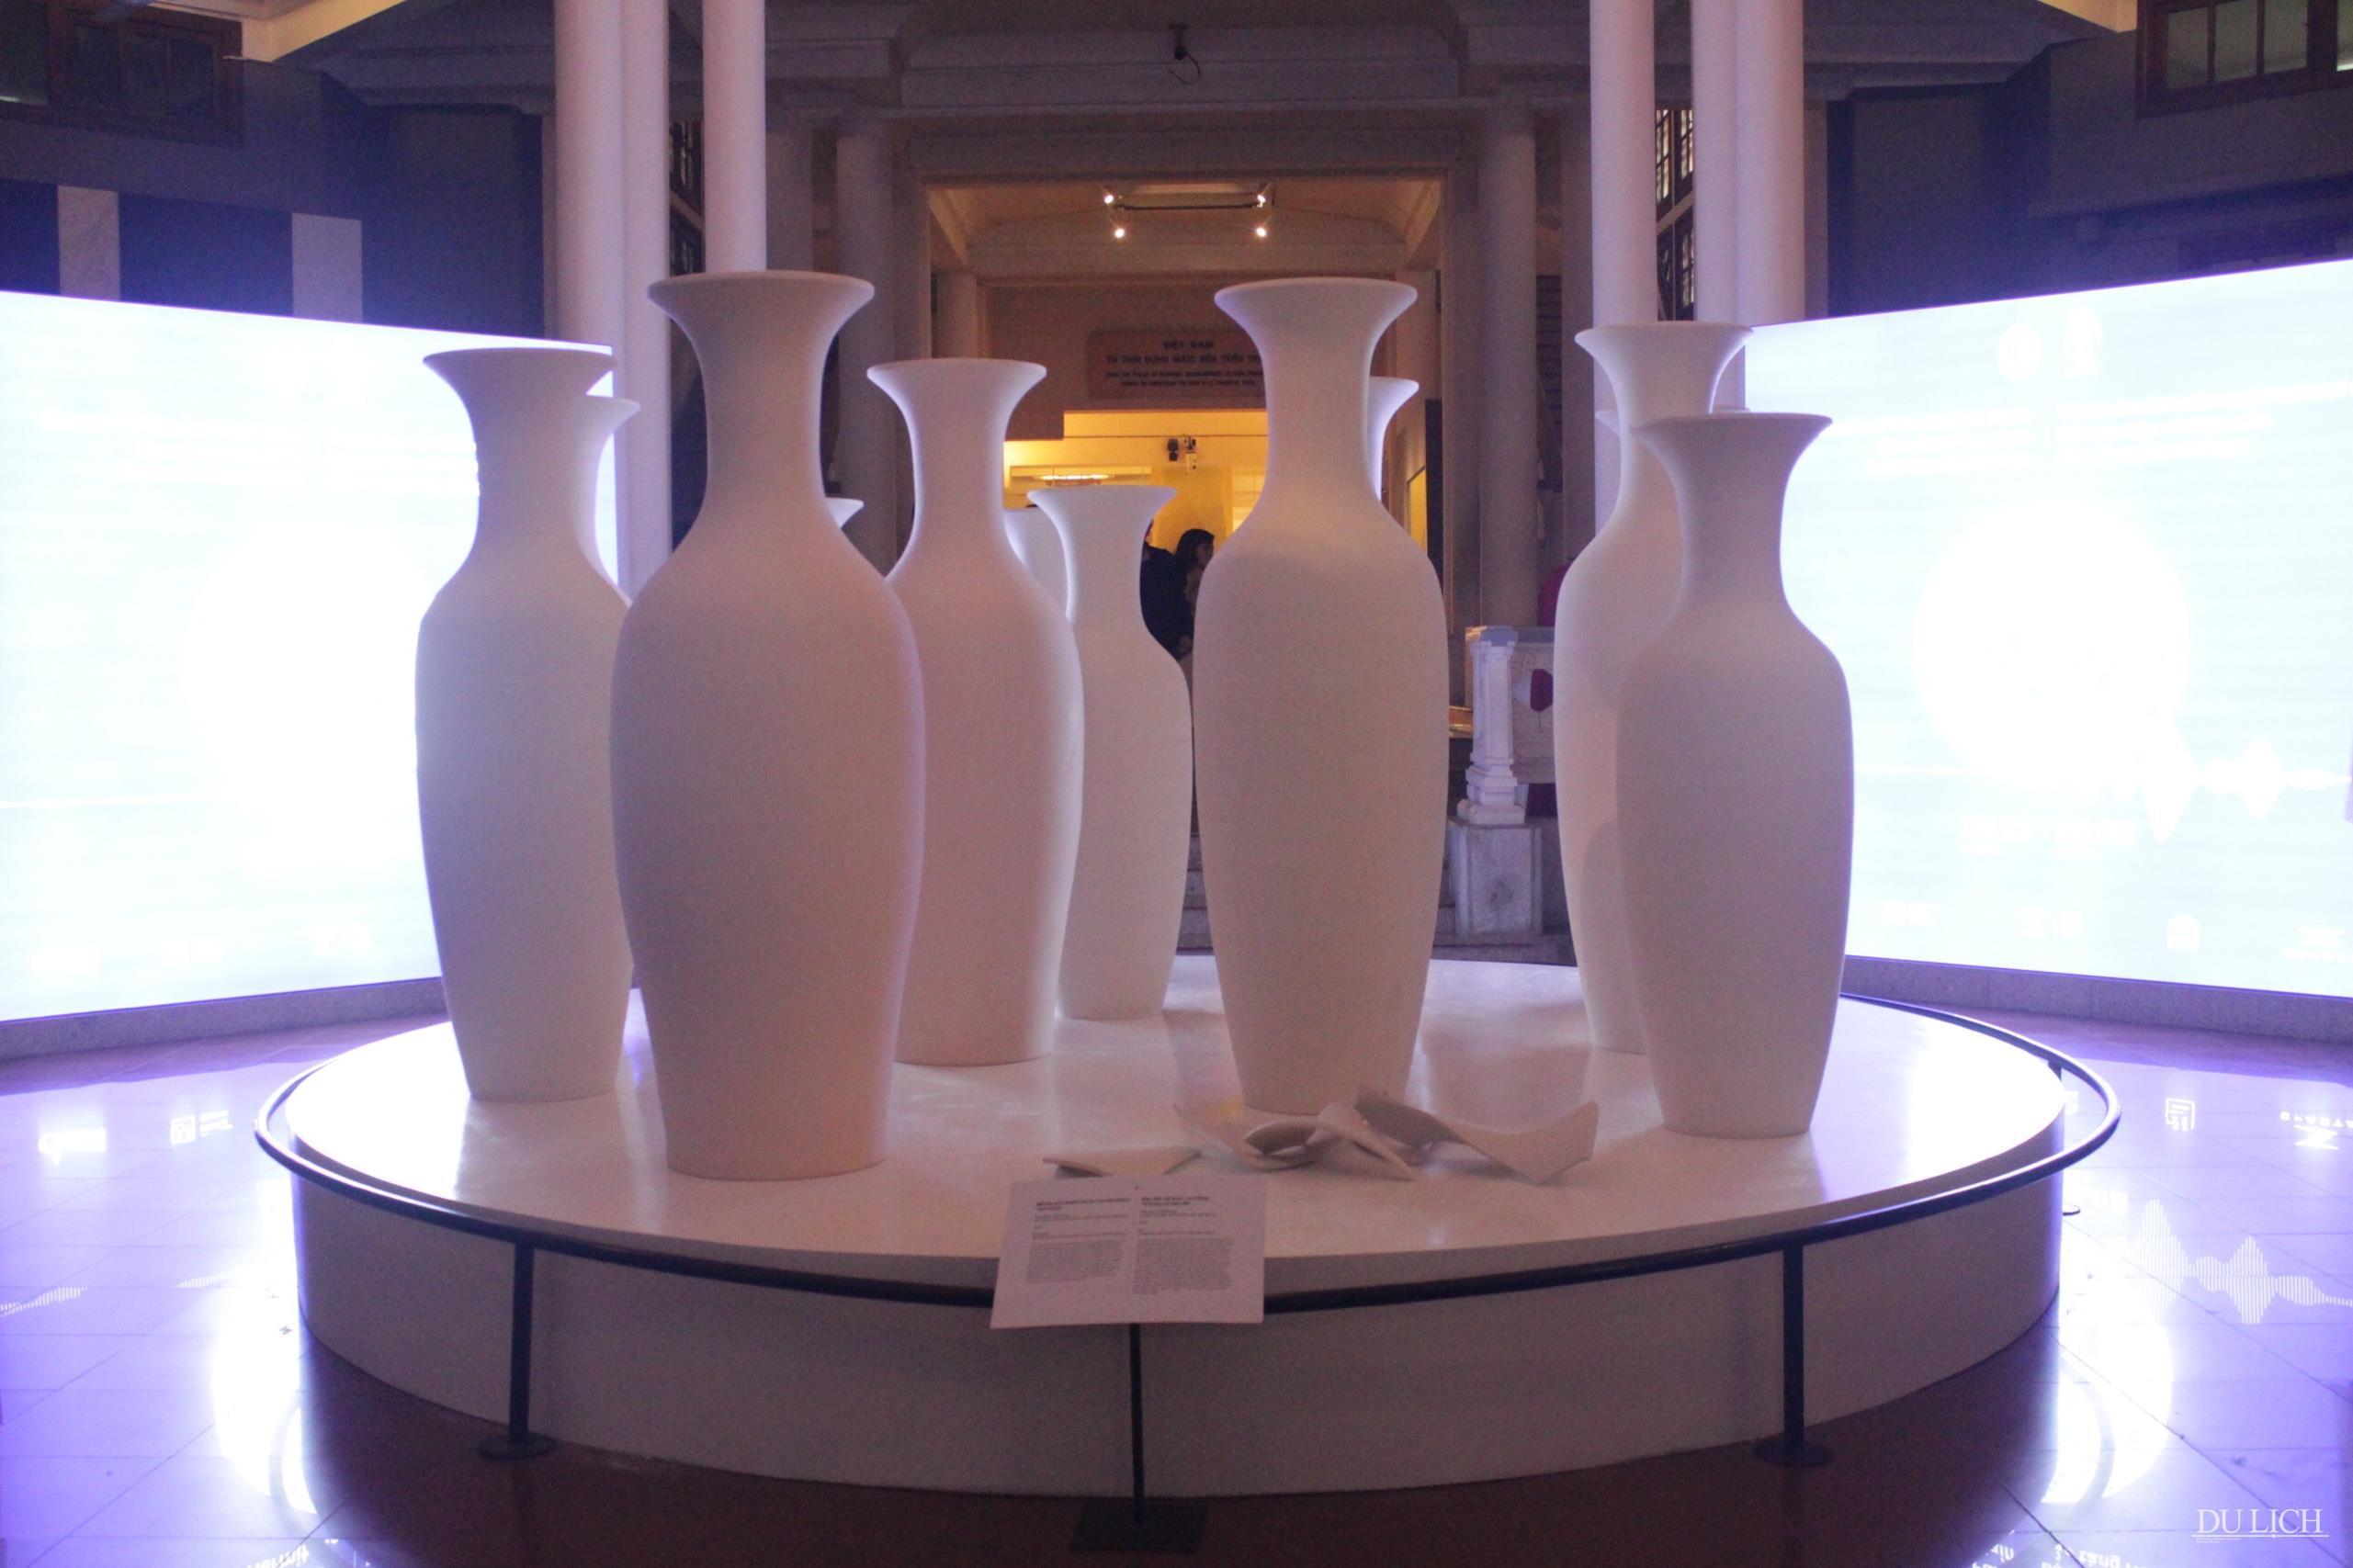 Khu vực sảnh trưng bày được thể hiện bởi nghệ thuật sắp đặt từ các loại bình gốm sứ trắng, dạng phôi.